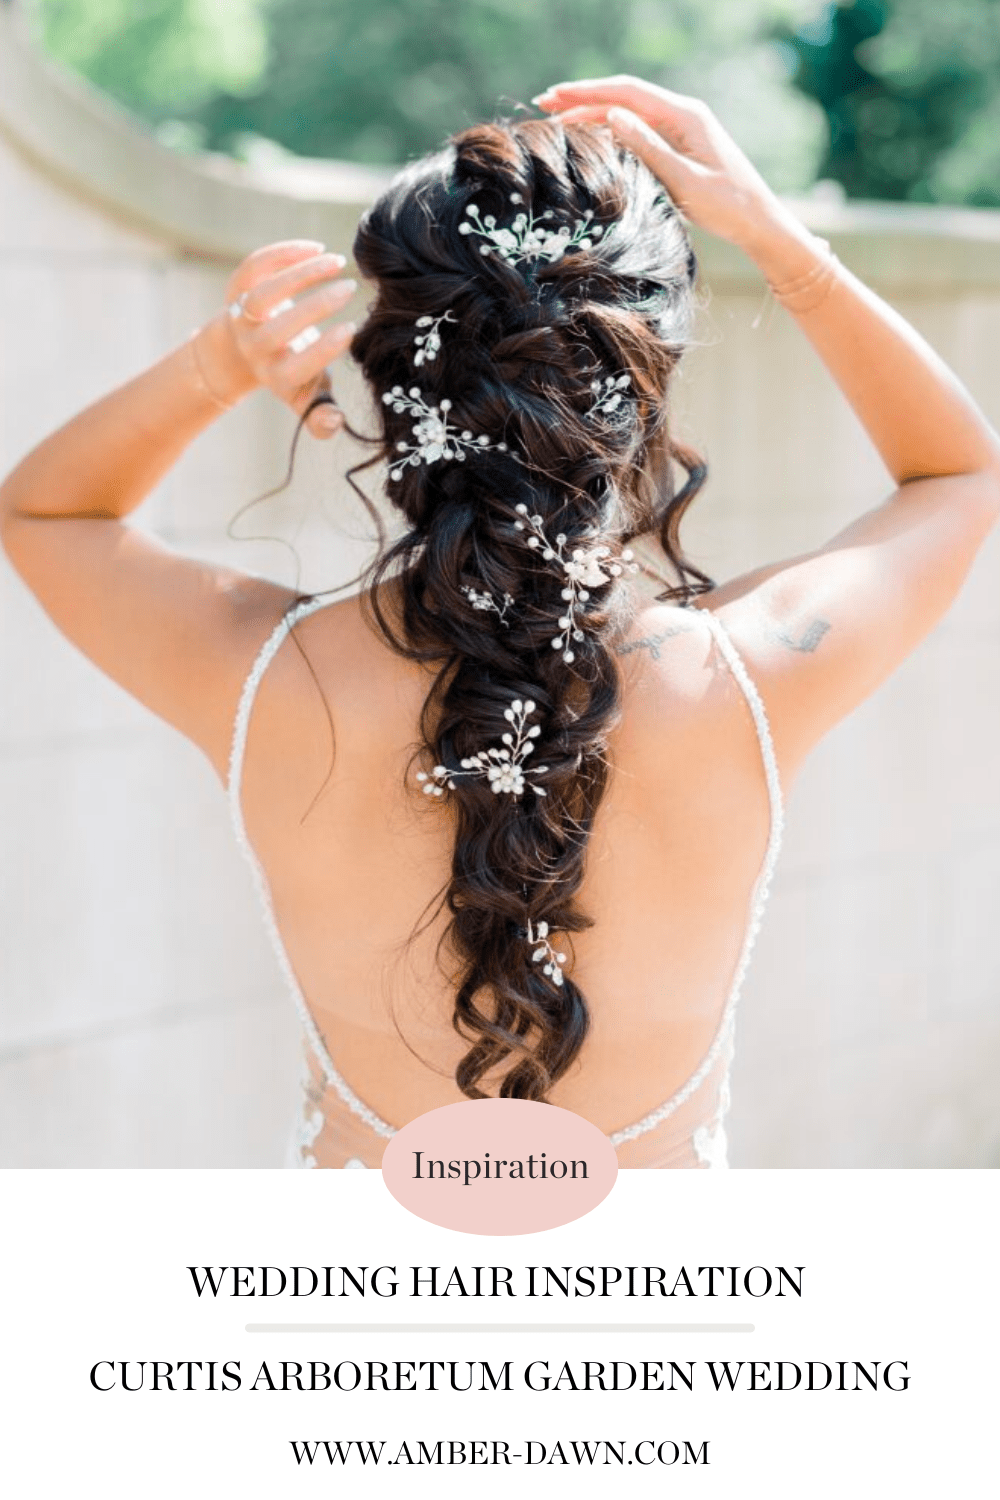 wedding hair inspiration from Curtis Arboretum garden wedding